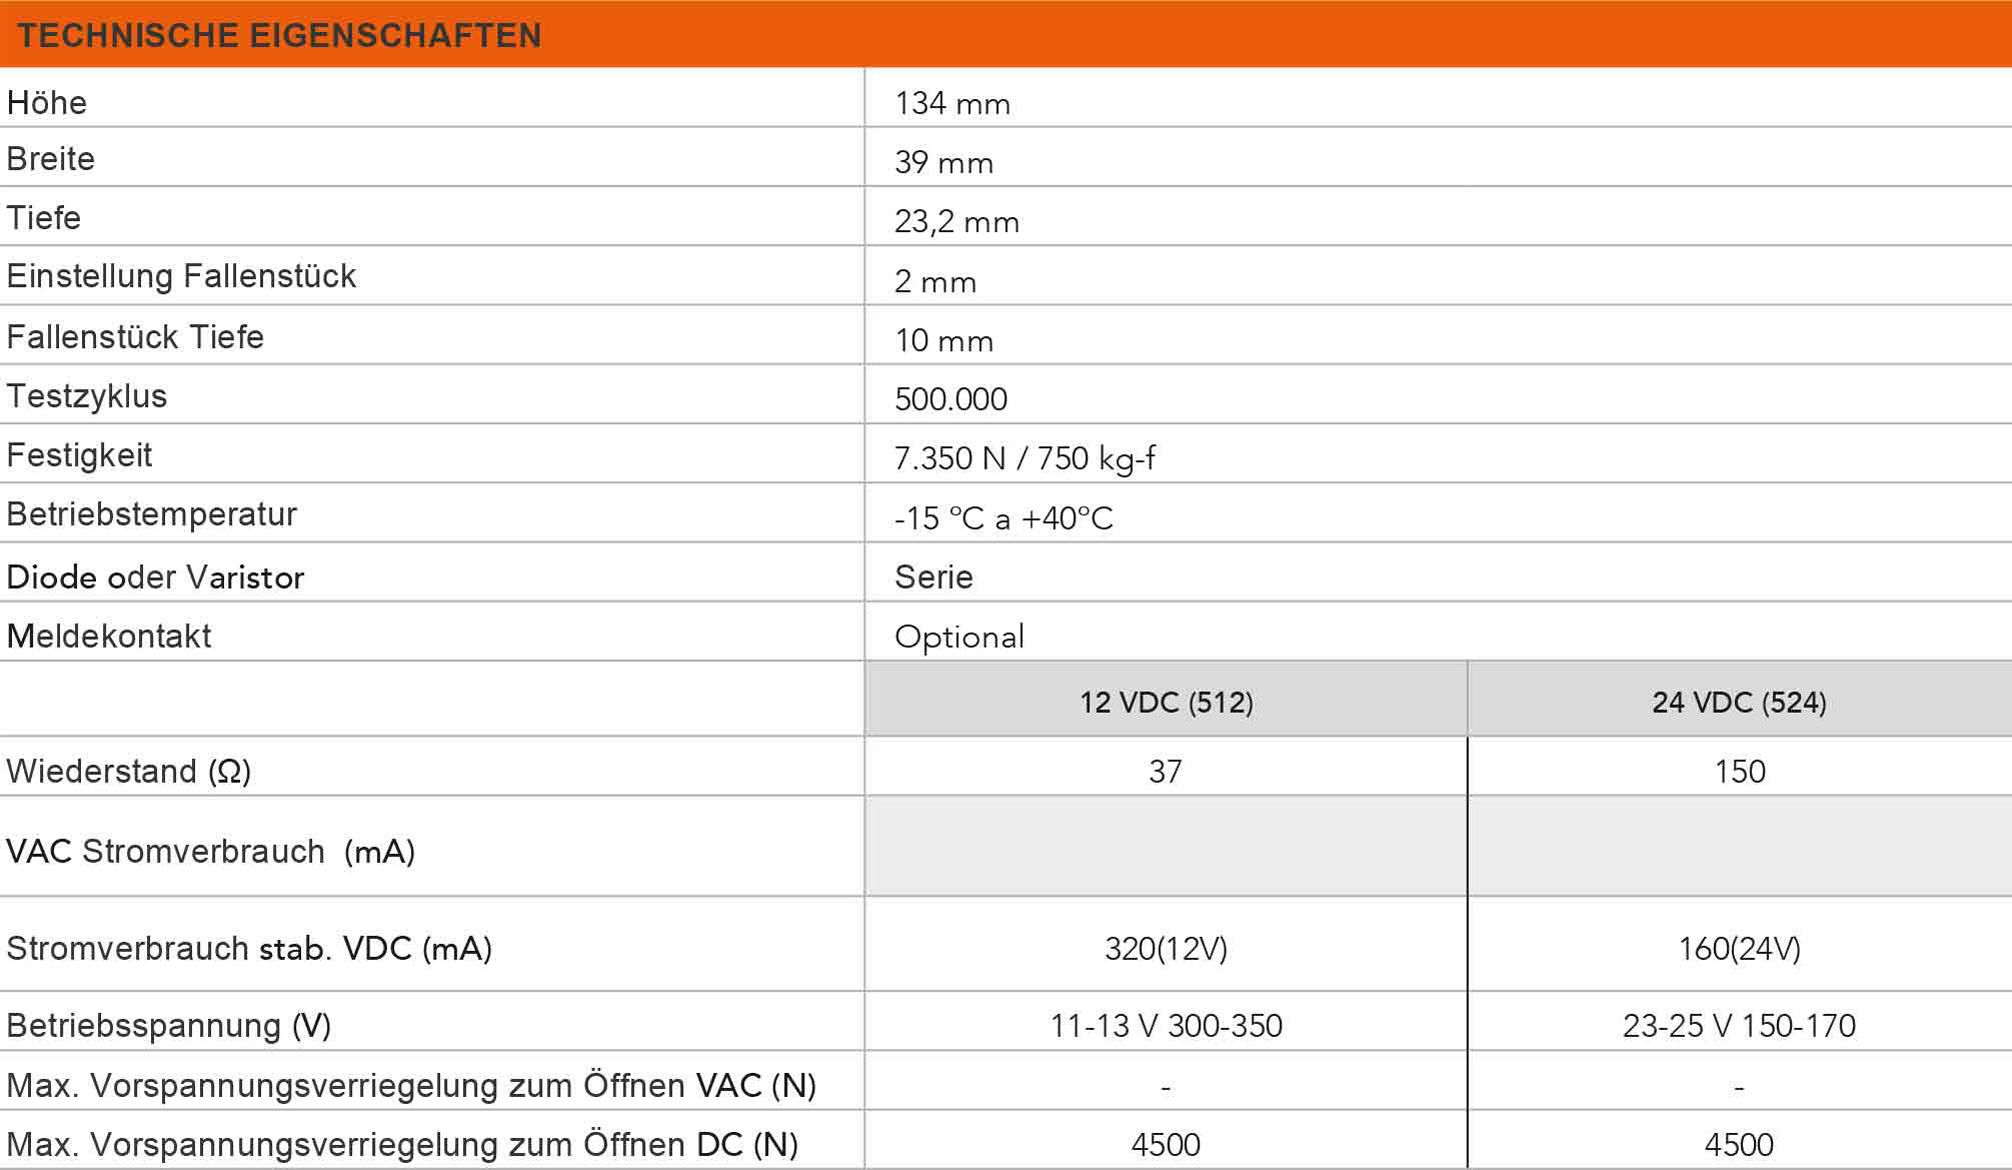 Tabelle der technischen Eigenschaften des elektrischen Türöffners der Serie 77